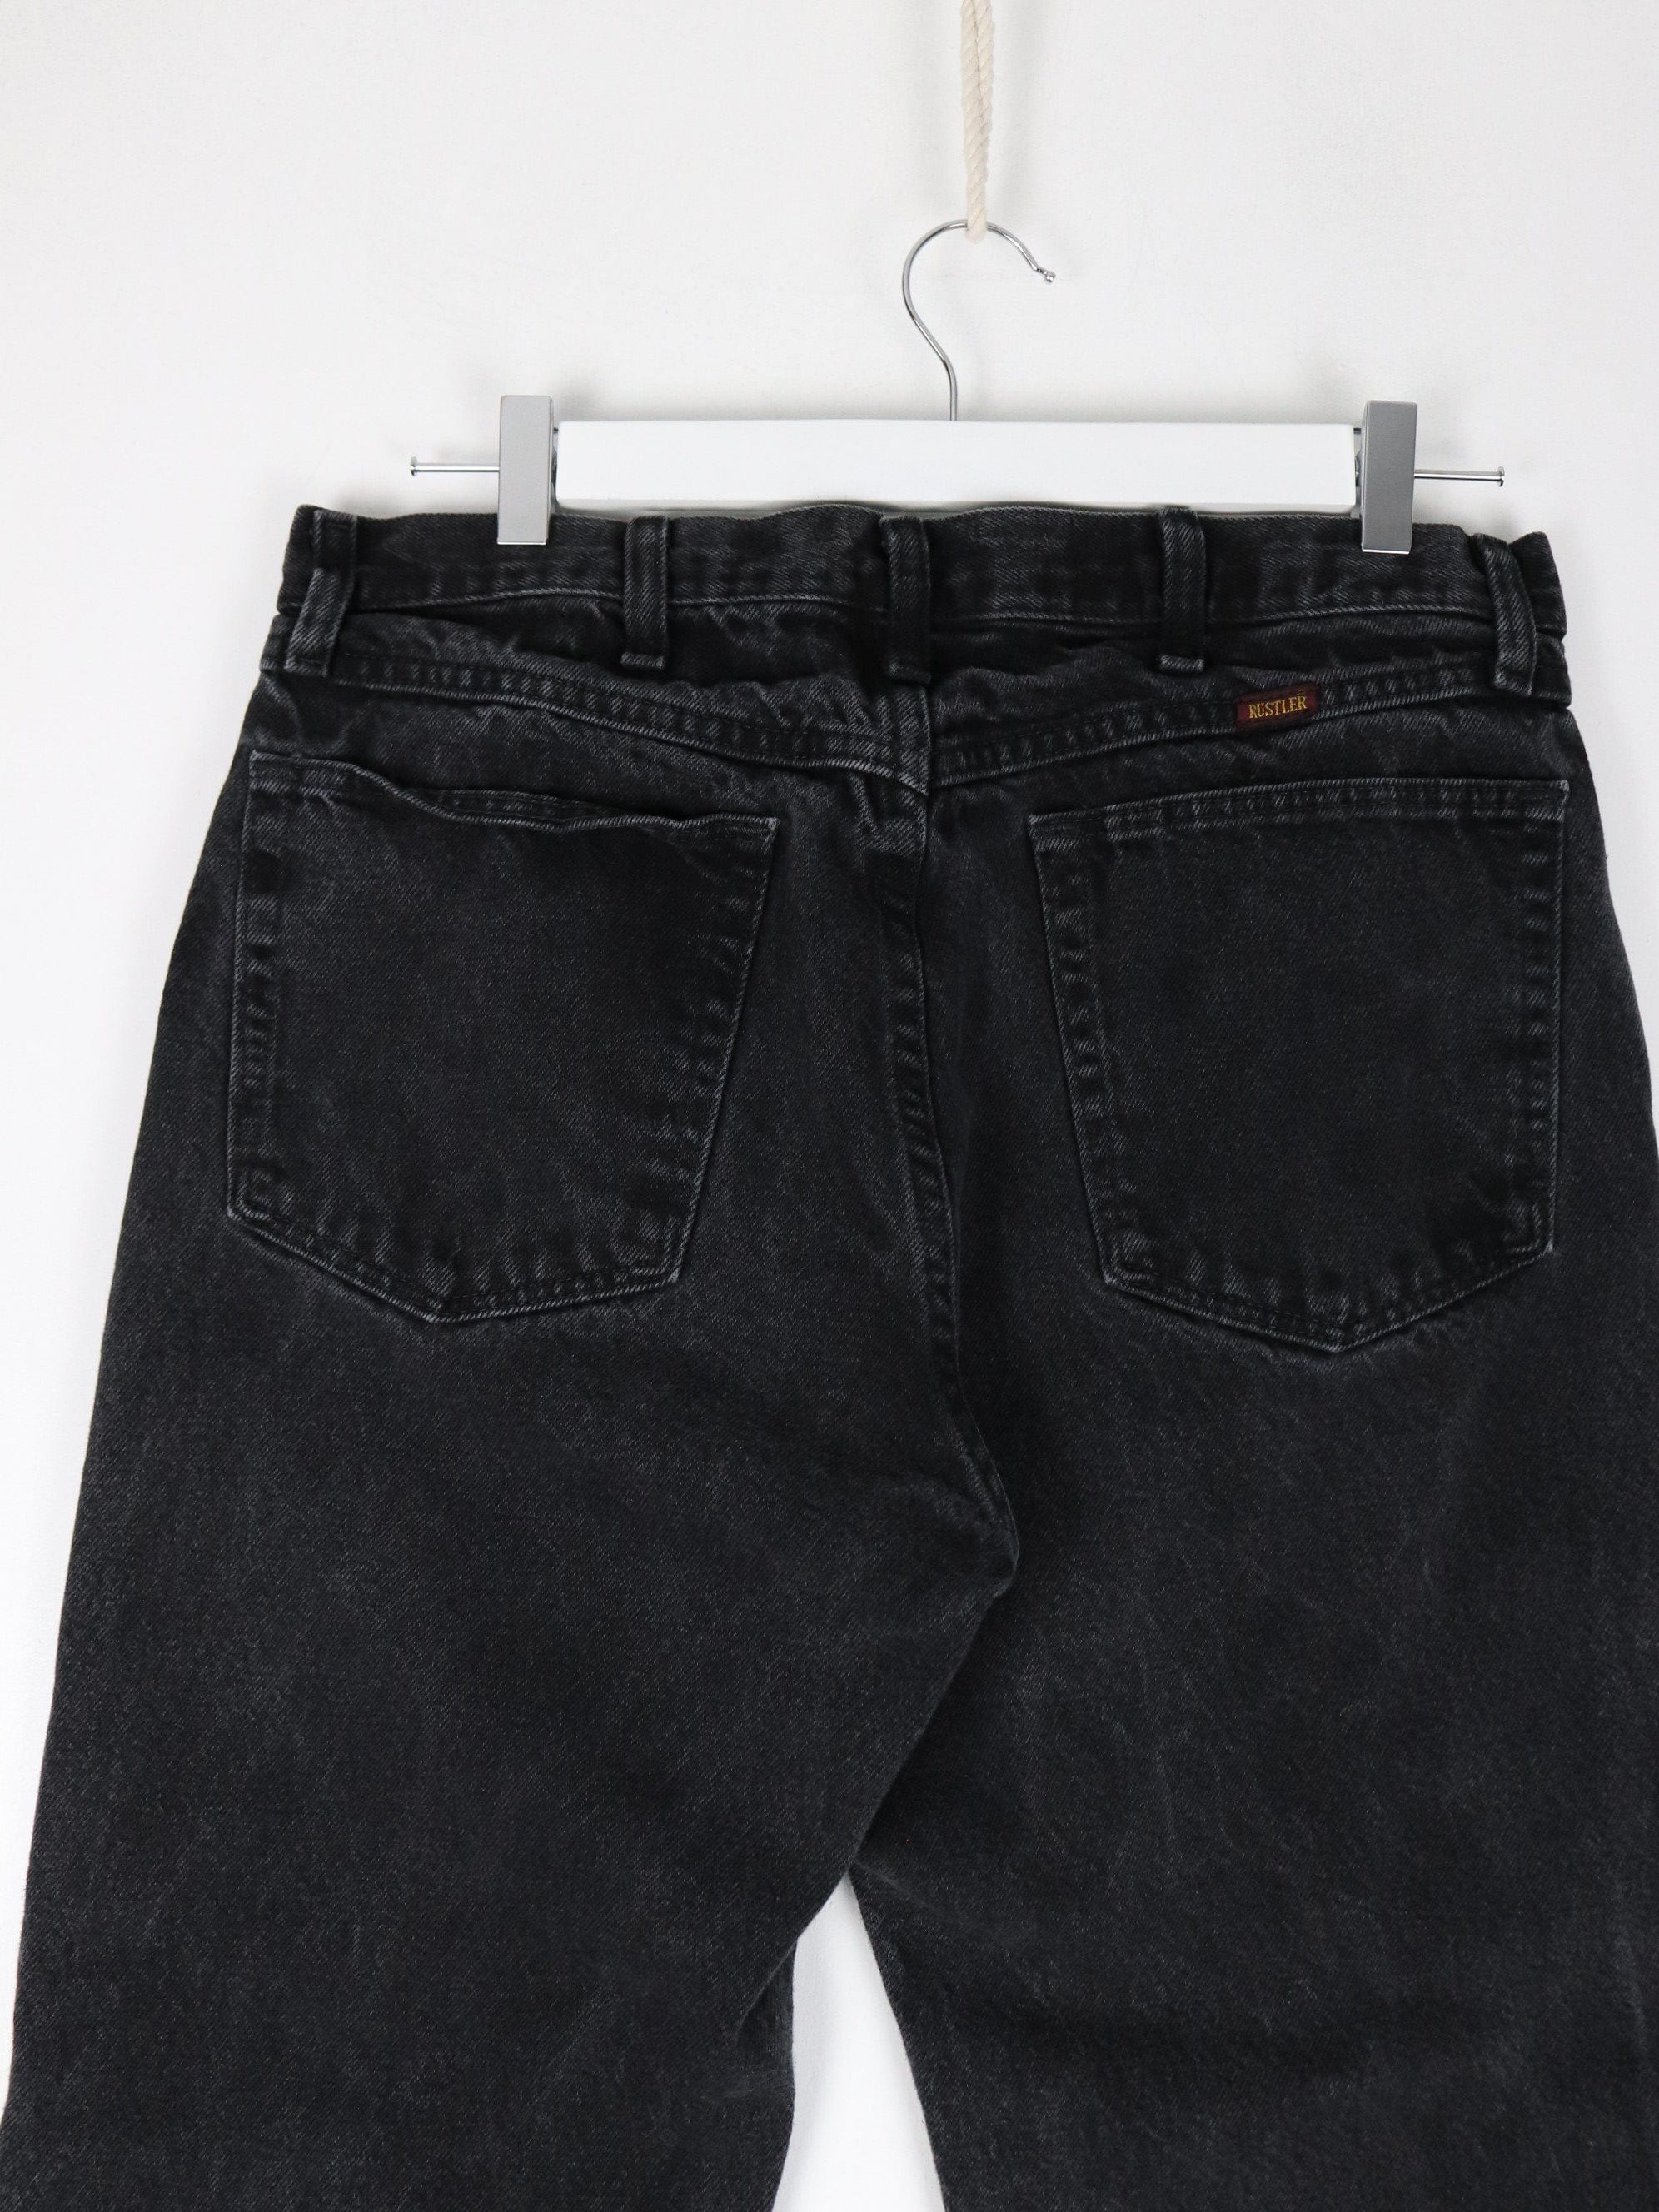 Vintage Rustler Pants Mens 33 x 30 Black Denim Jeans – Proper Vintage